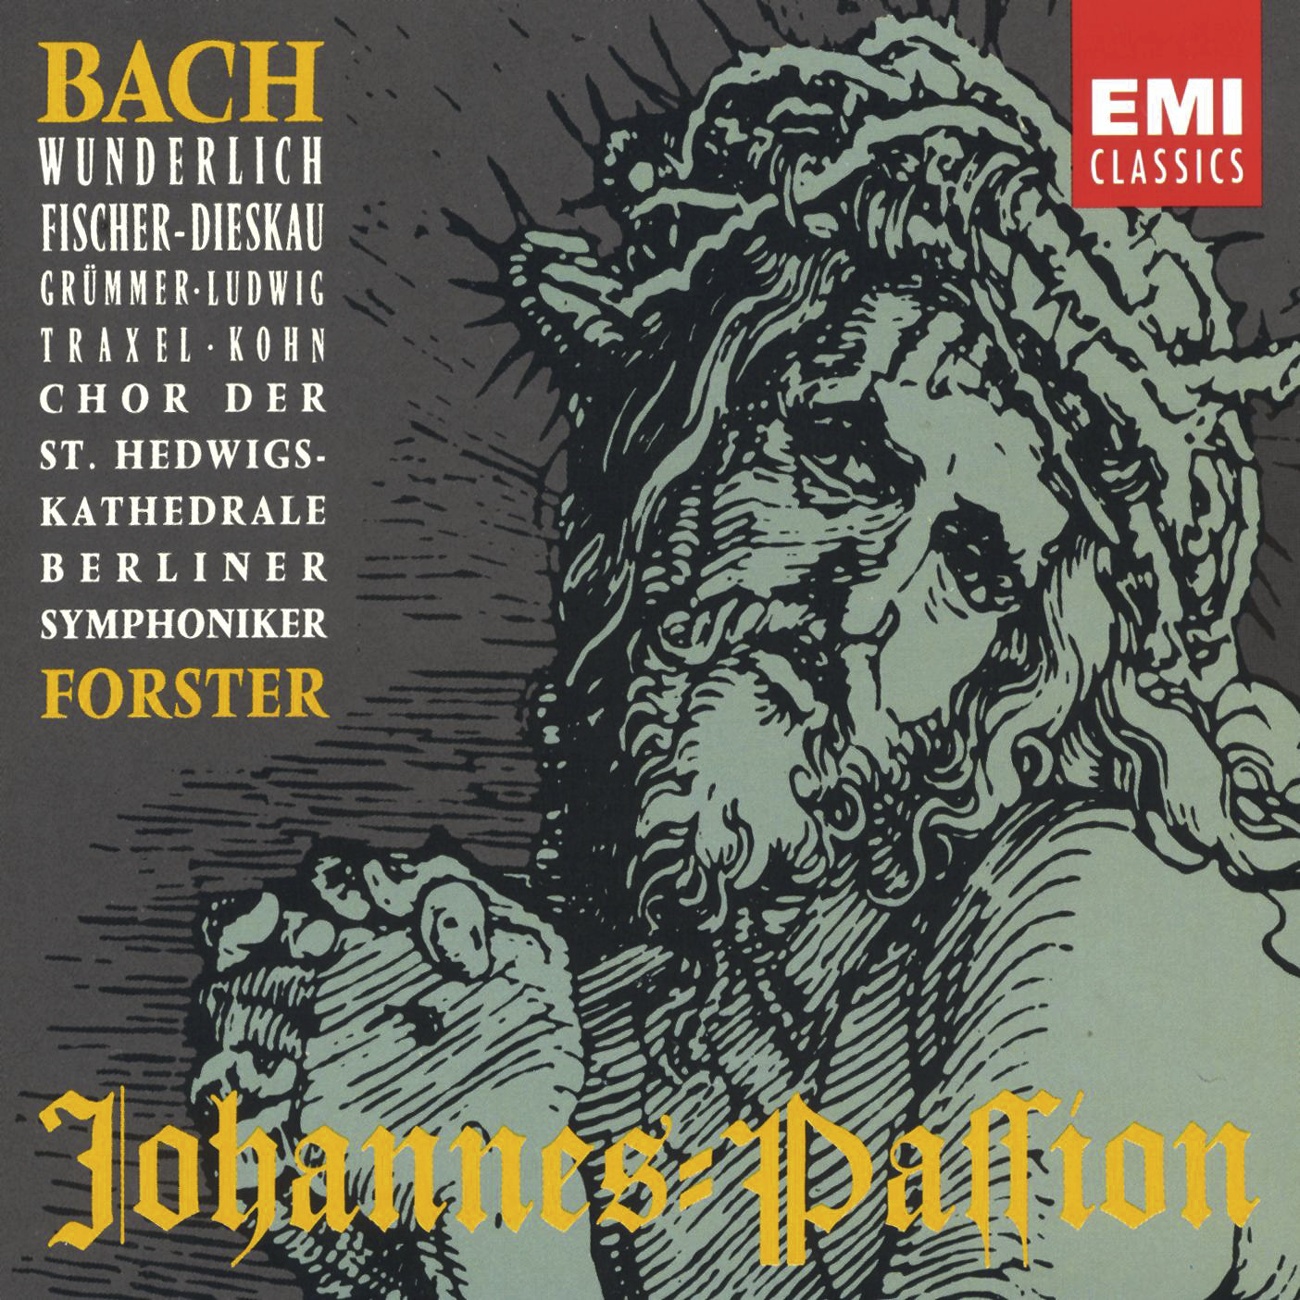 St. John Passion BWV 245 JohannesPassion, Second Part: Betrachte, meine Seel', mit ngstlichem Vergnü gen Nr. 31: Arioso  Bas